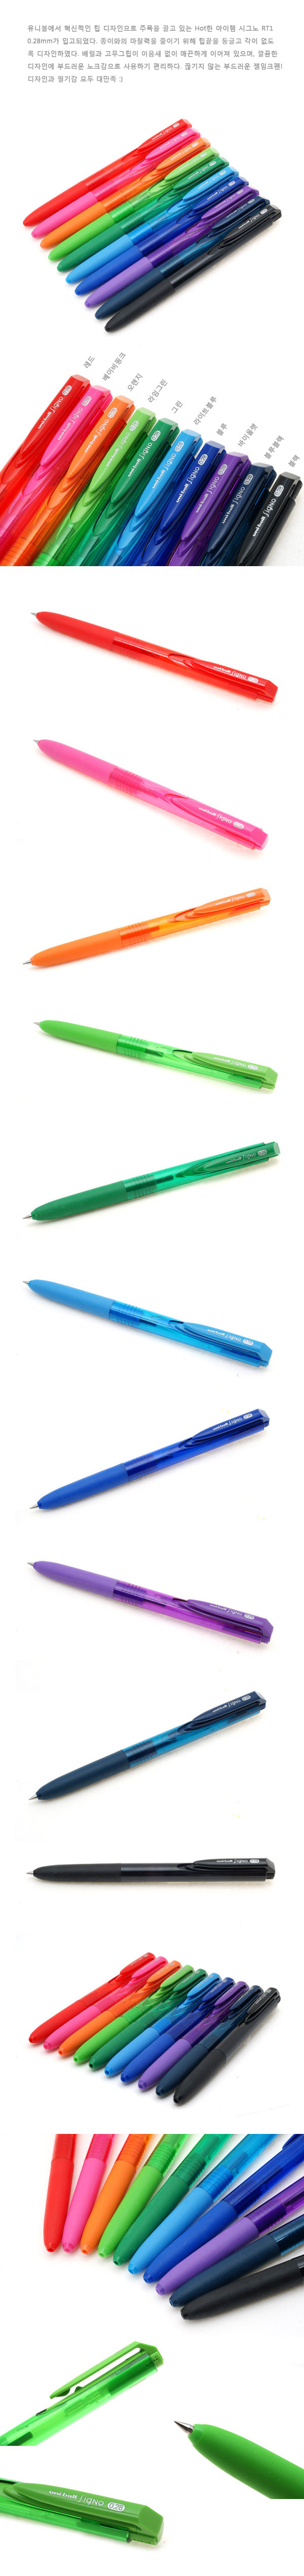 유니볼 시그노RT1-0.28mm(10컬러) 2,900원 - 제이펜즈 디자인문구, 필기류, 중성펜, 0.3mm이하 바보사랑 유니볼 시그노RT1-0.28mm(10컬러) 2,900원 - 제이펜즈 디자인문구, 필기류, 중성펜, 0.3mm이하 바보사랑